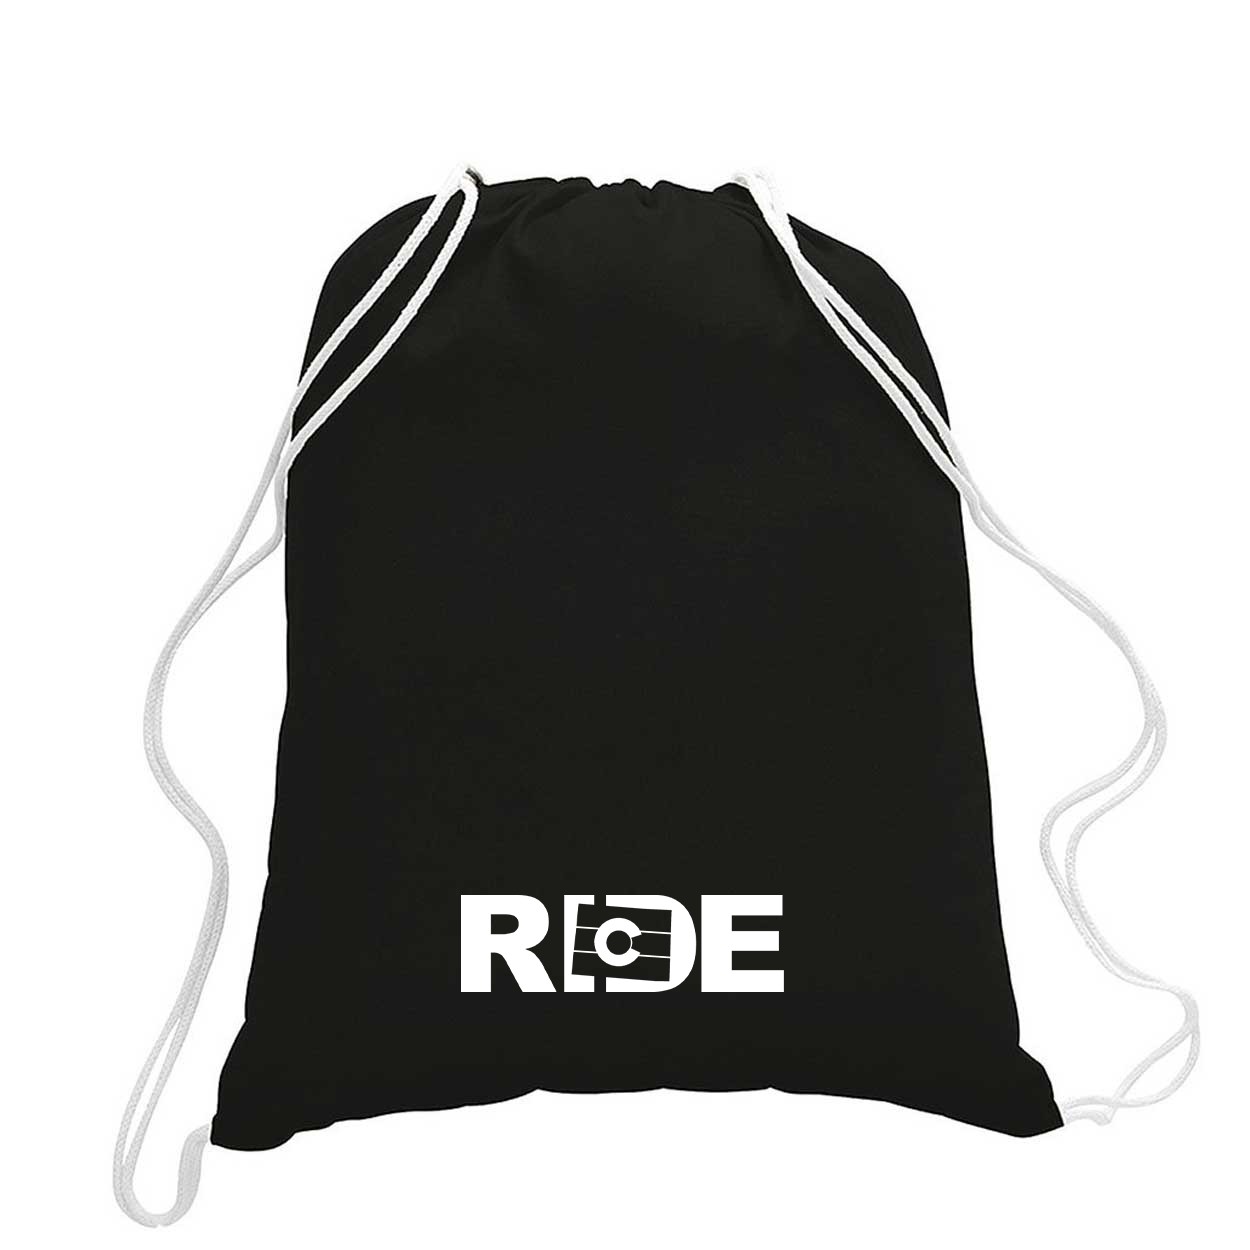 Ride Colorado Classic Drawstring Sport Pack Bag/Cinch Sack Black (White Logo)